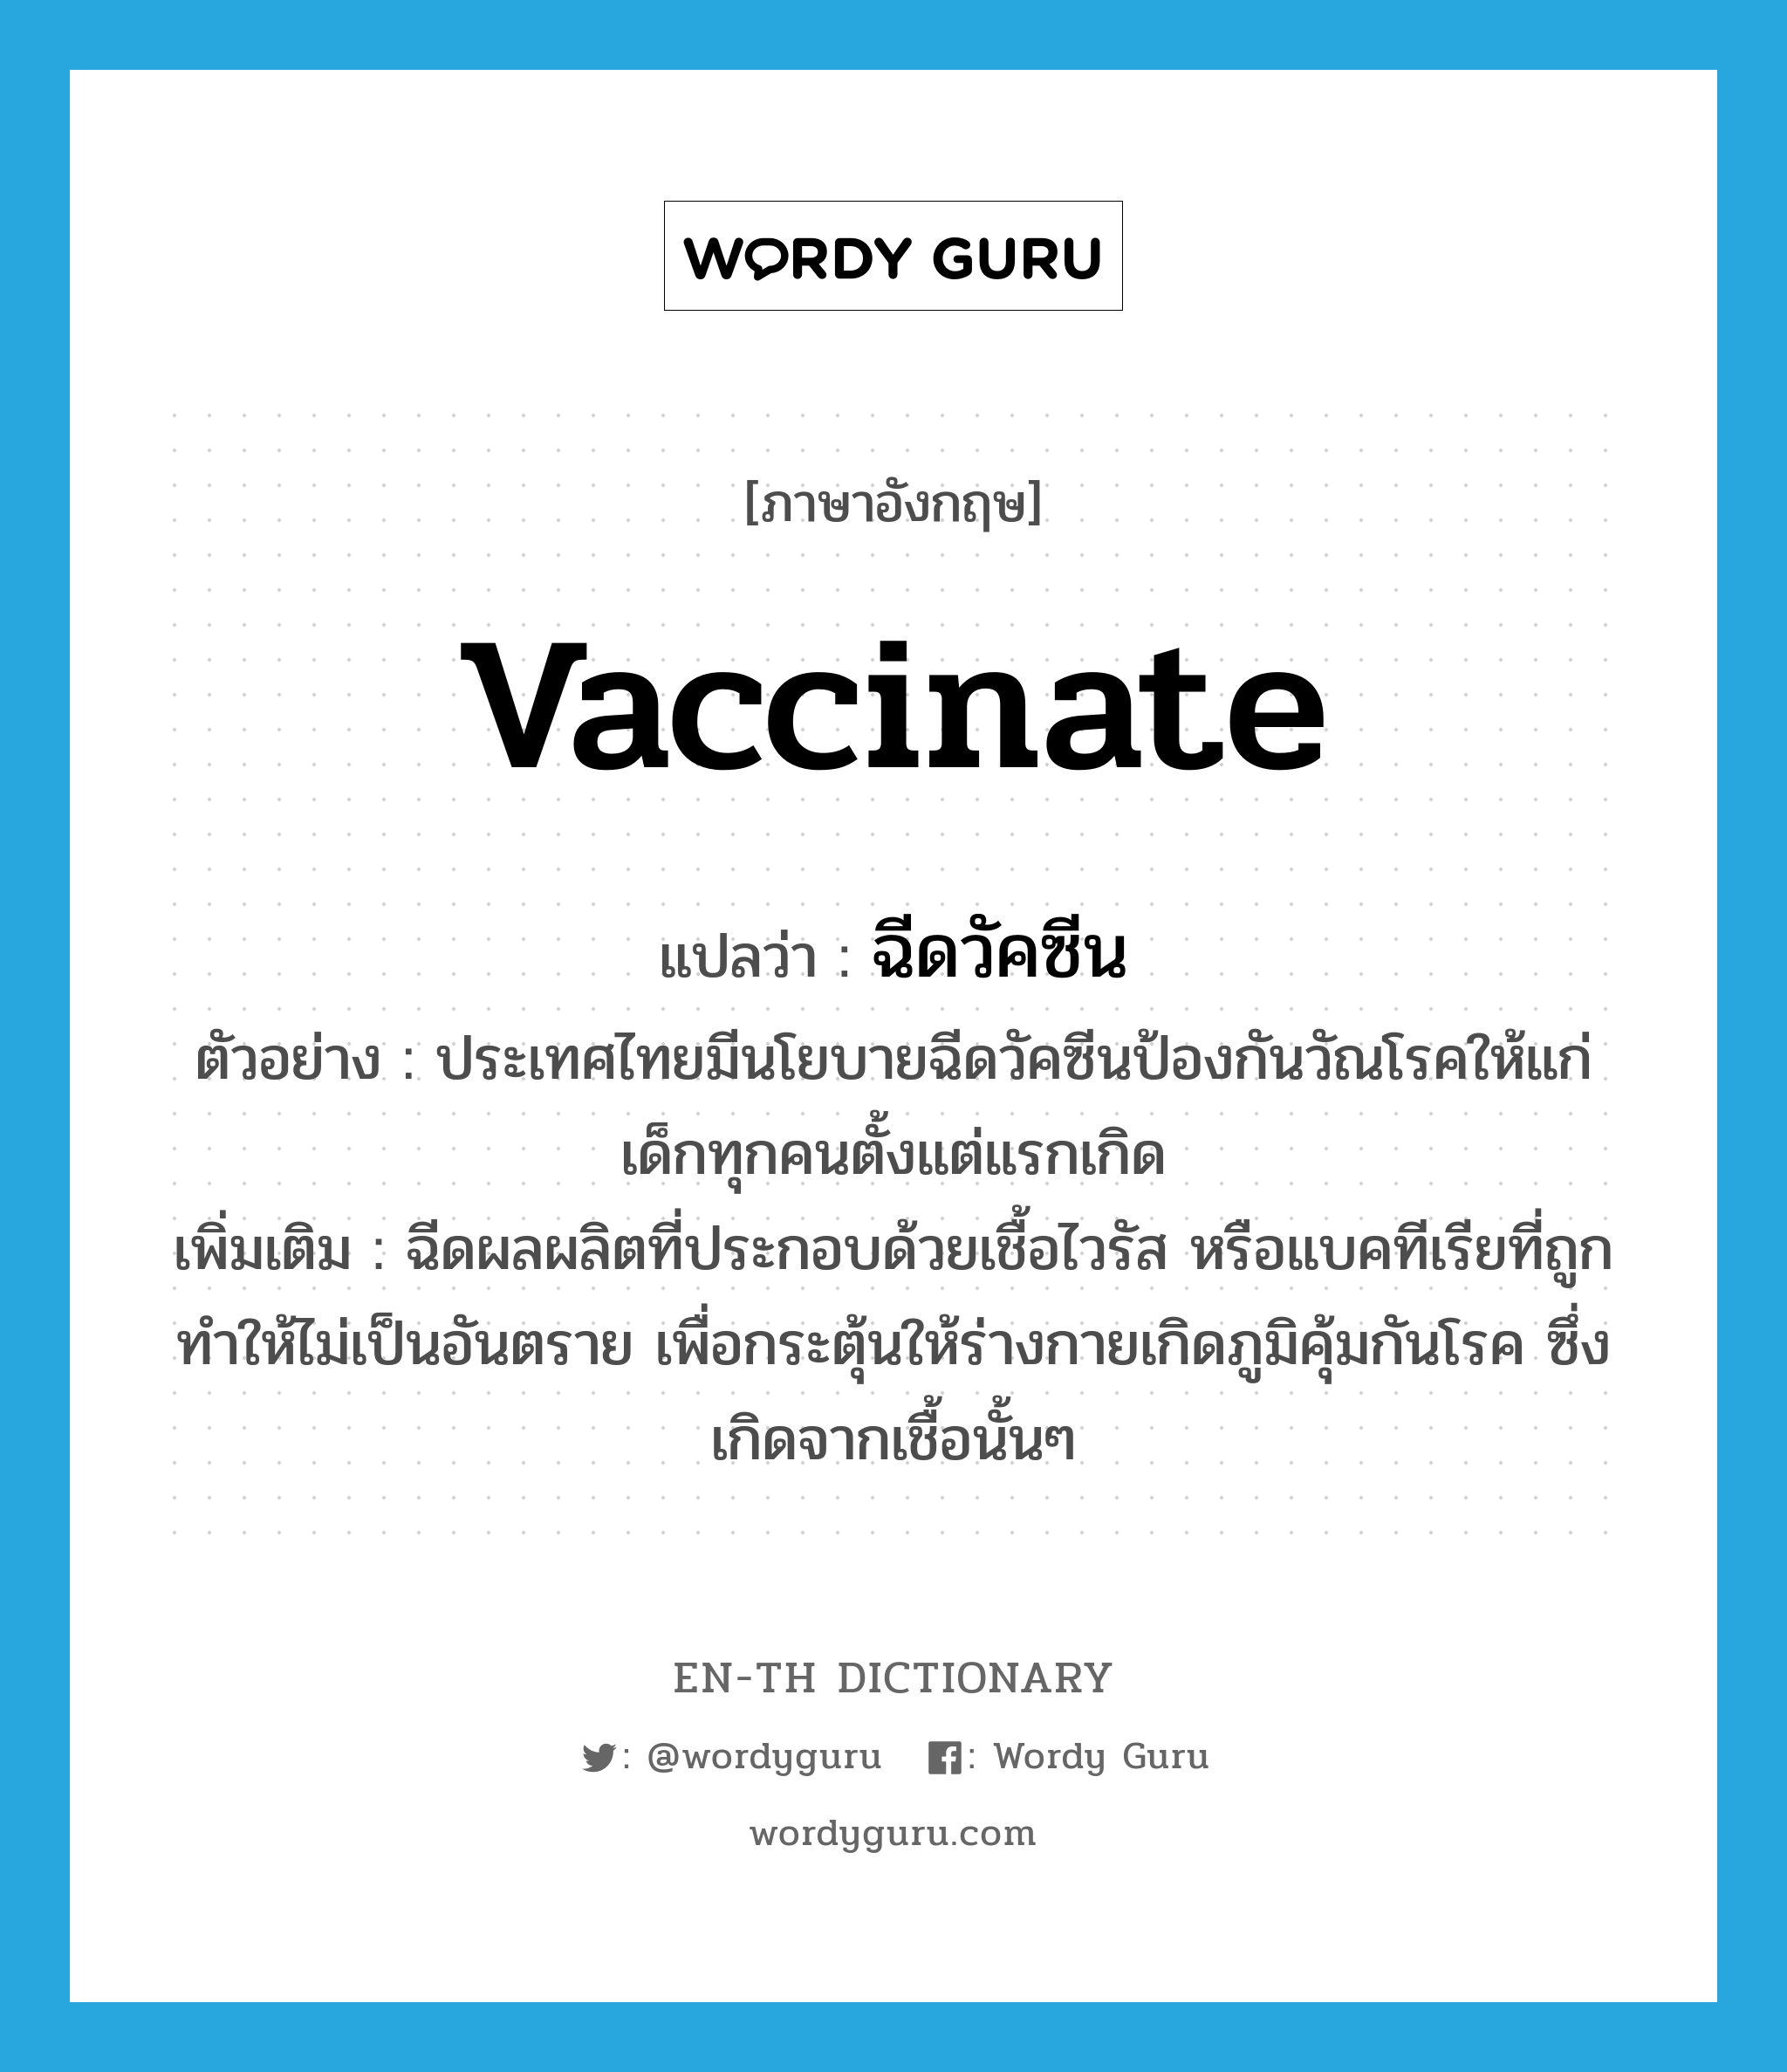 ฉีดวัคซีน ภาษาอังกฤษ?, คำศัพท์ภาษาอังกฤษ ฉีดวัคซีน แปลว่า vaccinate ประเภท V ตัวอย่าง ประเทศไทยมีนโยบายฉีดวัคซีนป้องกันวัณโรคให้แก่เด็กทุกคนตั้งแต่แรกเกิด เพิ่มเติม ฉีดผลผลิตที่ประกอบด้วยเชื้อไวรัส หรือแบคทีเรียที่ถูกทำให้ไม่เป็นอันตราย เพื่อกระตุ้นให้ร่างกายเกิดภูมิคุ้มกันโรค ซึ่งเกิดจากเชื้อนั้นๆ หมวด V